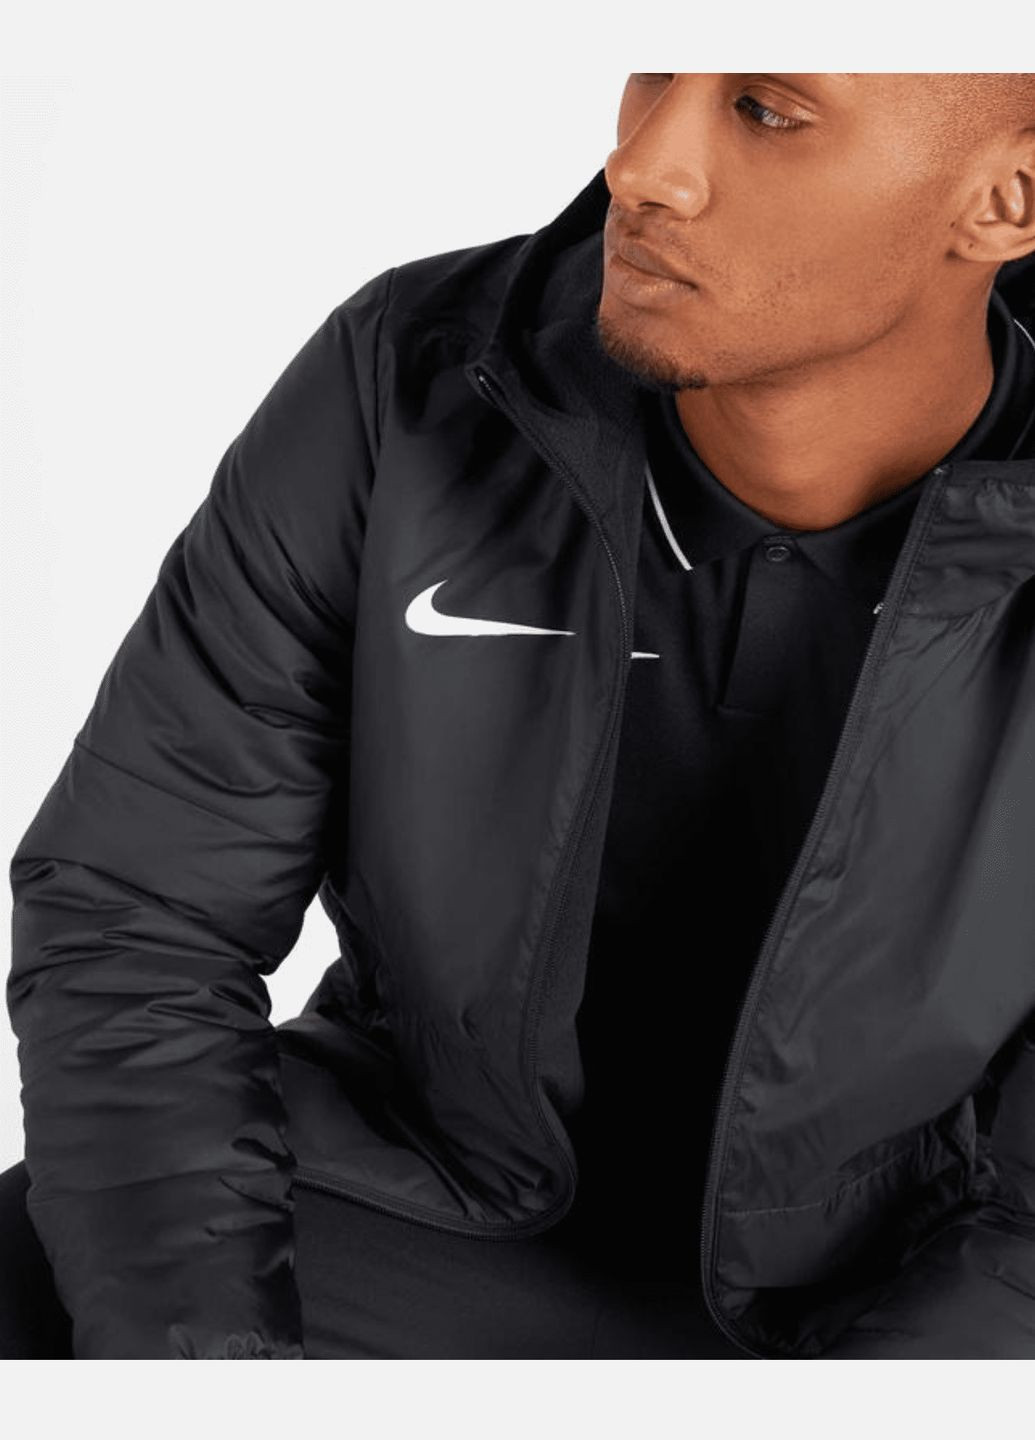 Чорна демісезонна куртка (вітровка) чоловіча fall jacket park 20 cw6157010 весна-осінь чорна Nike